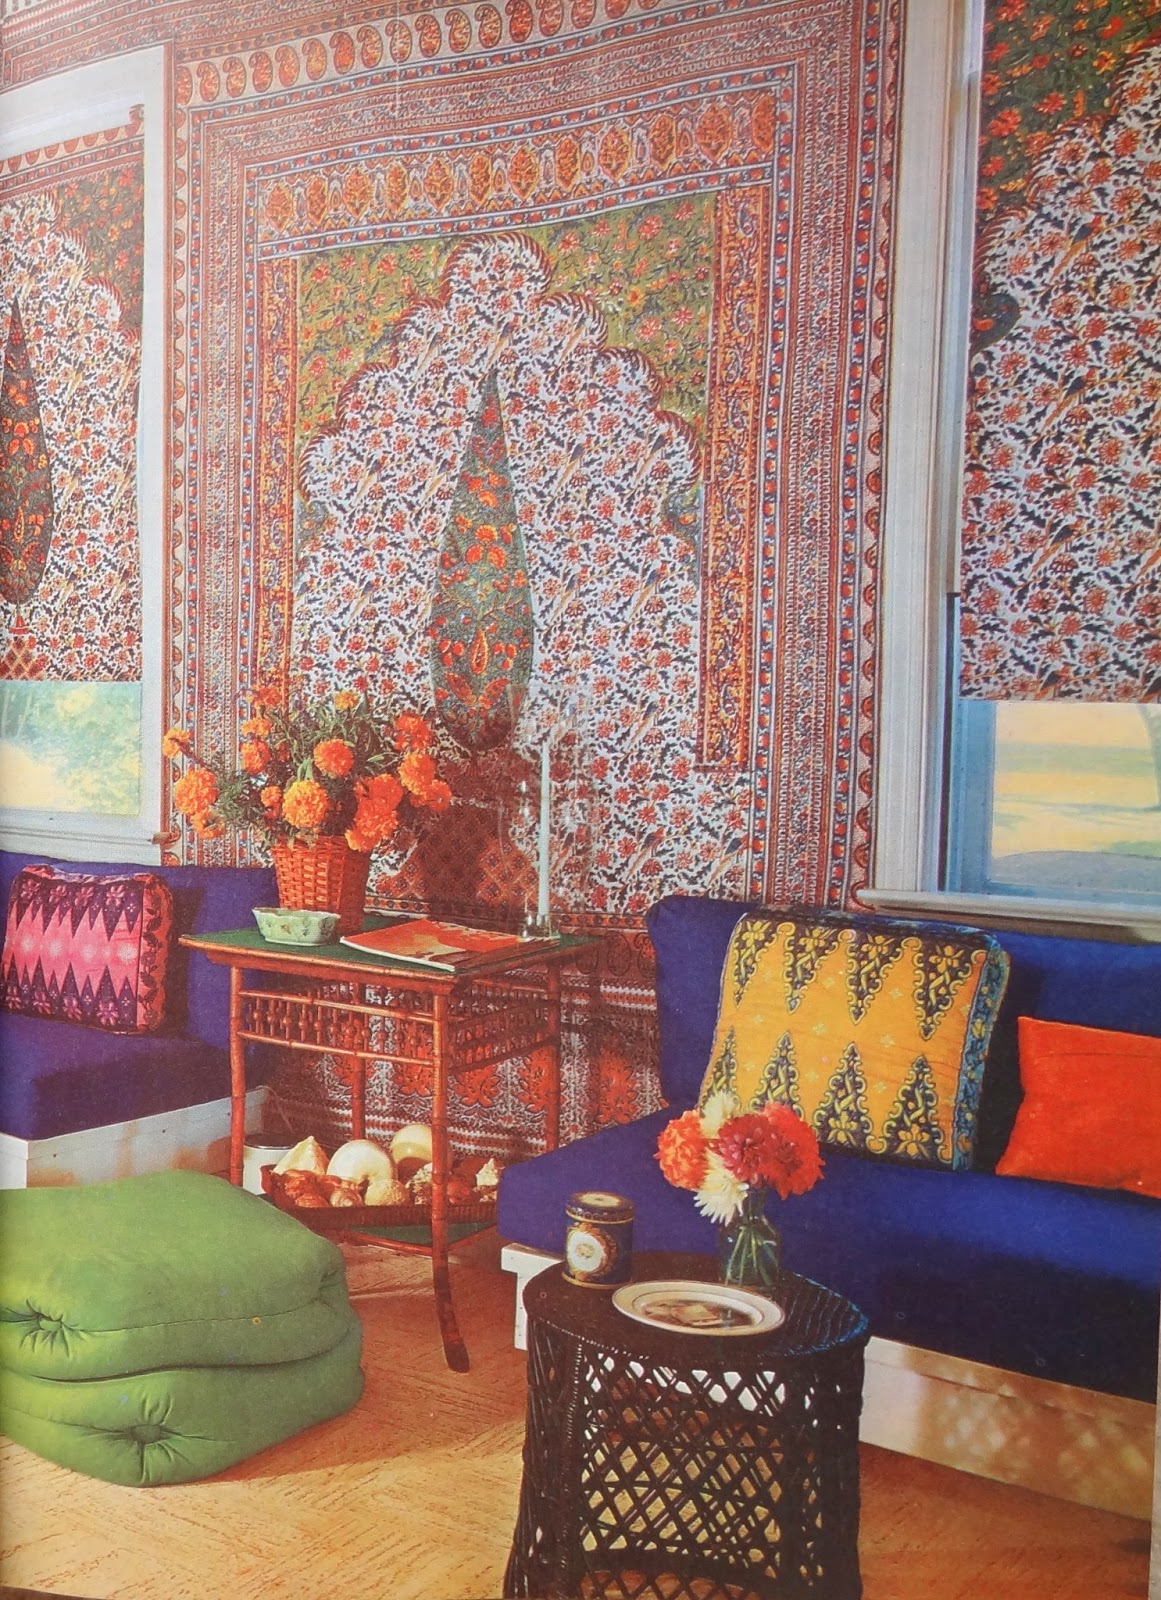 25 Wonderful Vintage Living Room Design Ideas - Decoration Love